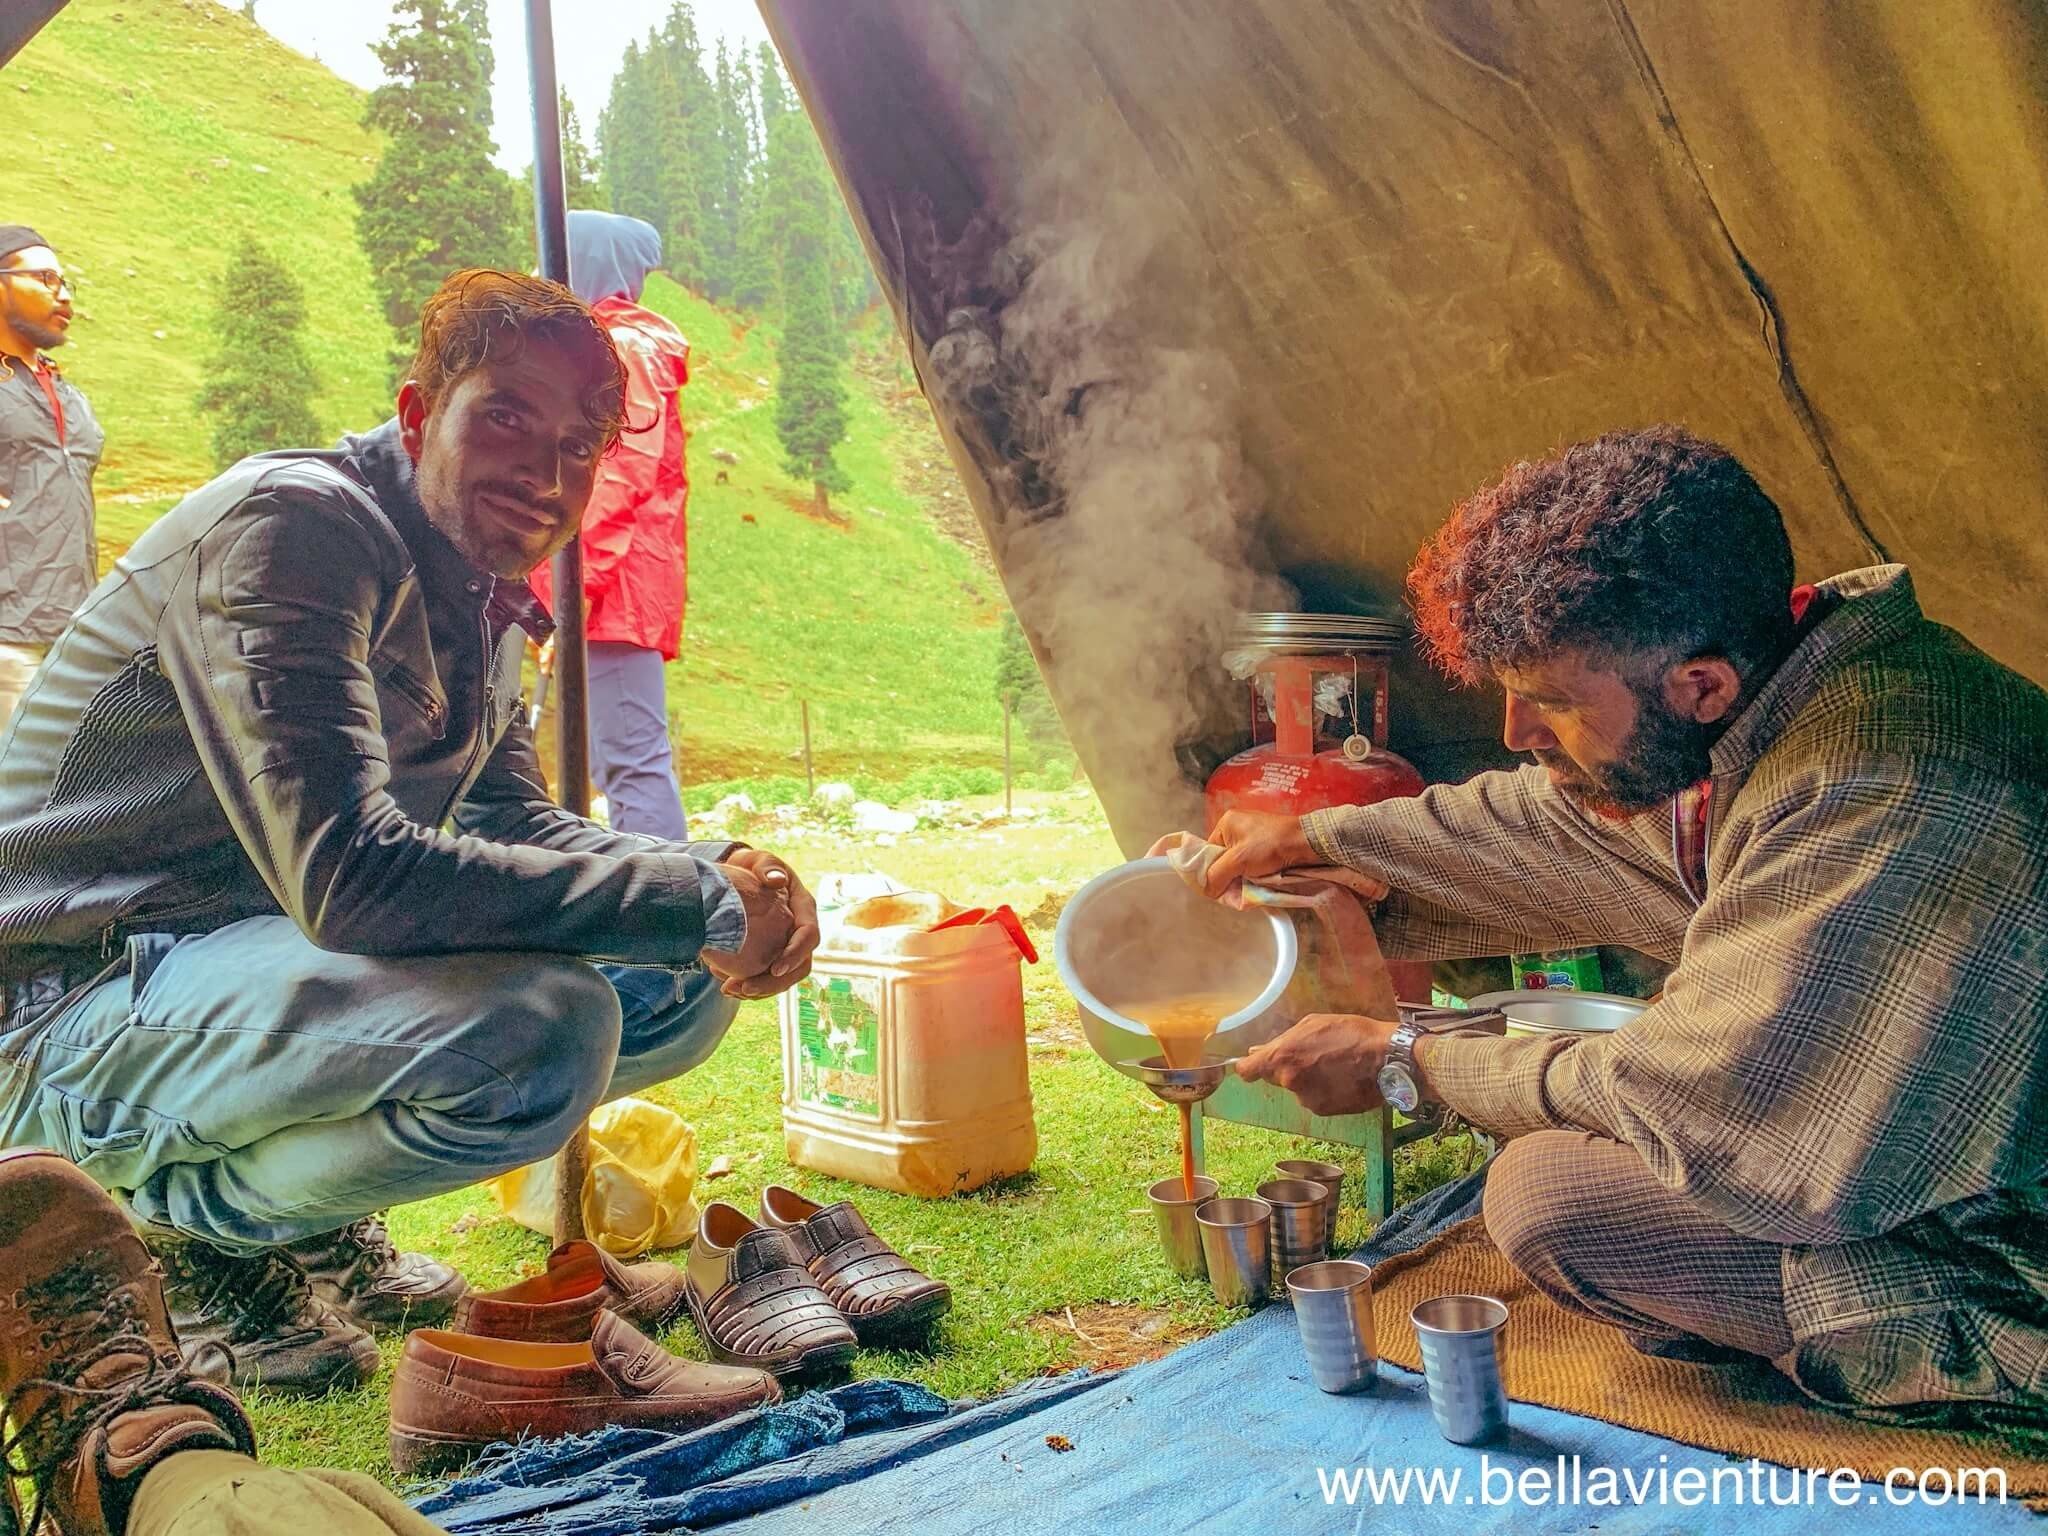 印度 India  北北印 North India 喀什米爾 Kashmir 七大湖健行 Kashmir Great Lakes Trek/ Budget trek Sonamarg 馬伕 廚師